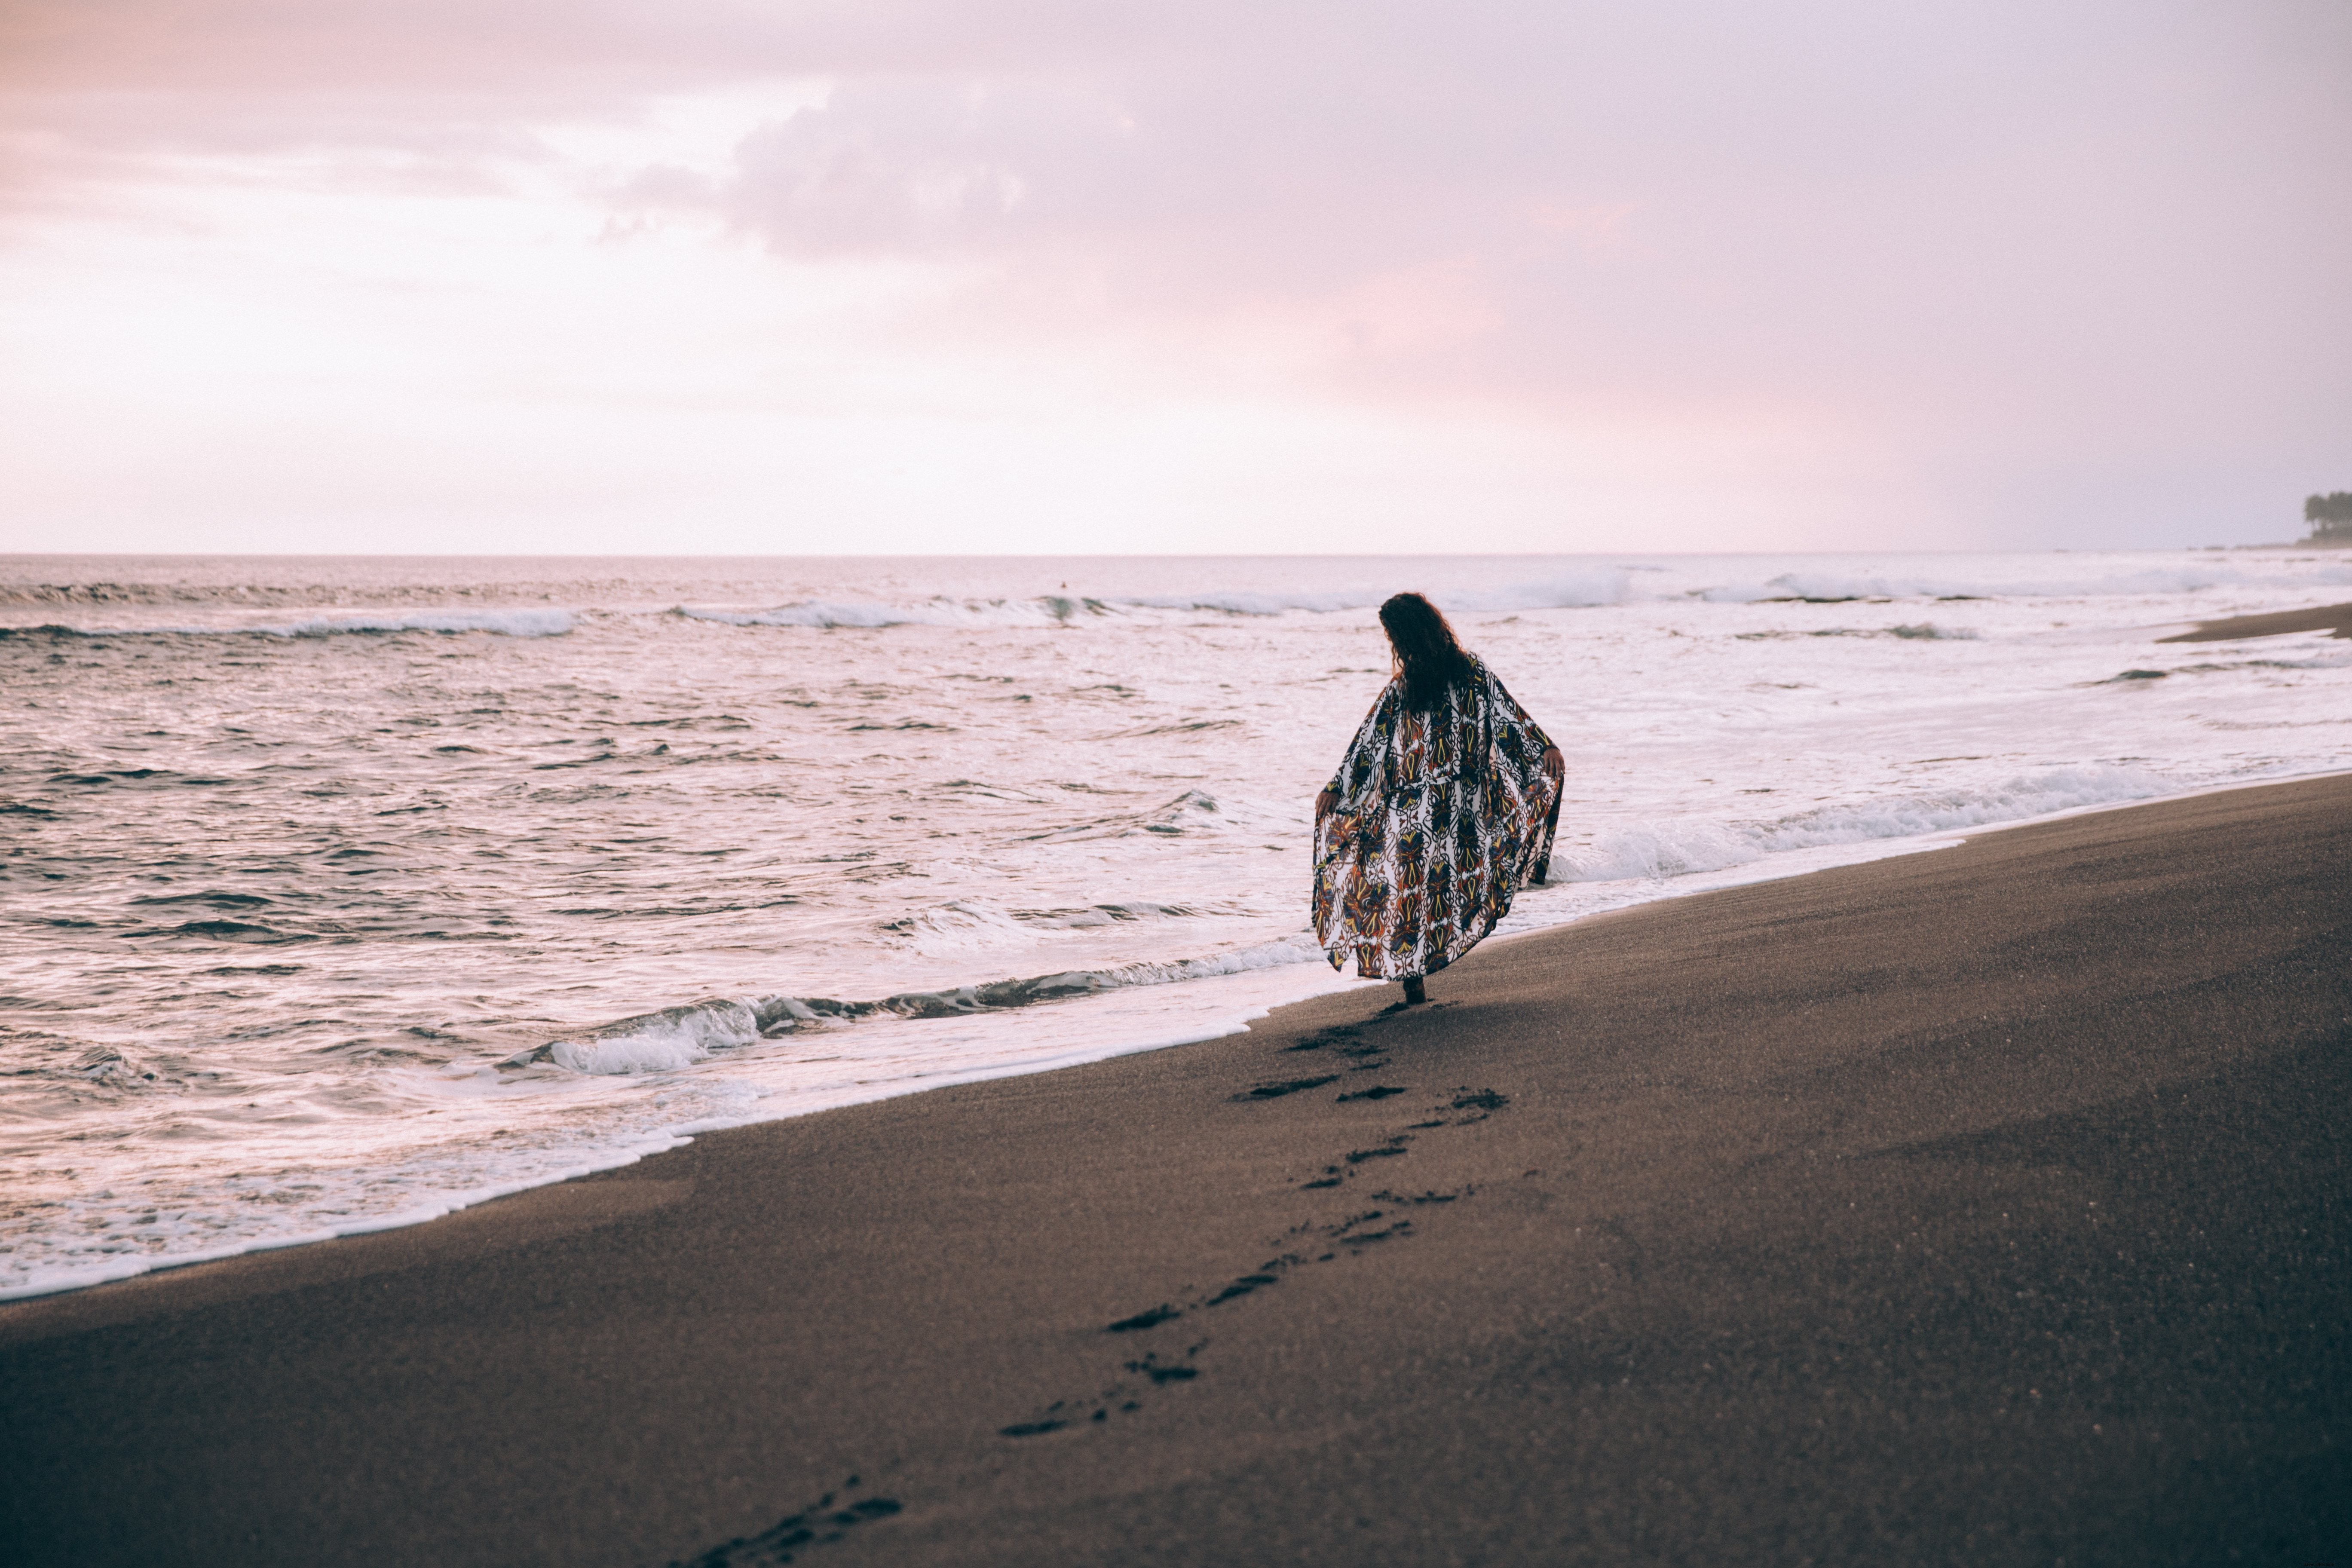 Seorang Wanita Berjalan Di Sepanjang Pantai Meninggalkan Jejak Kaki Di Pasir Foto